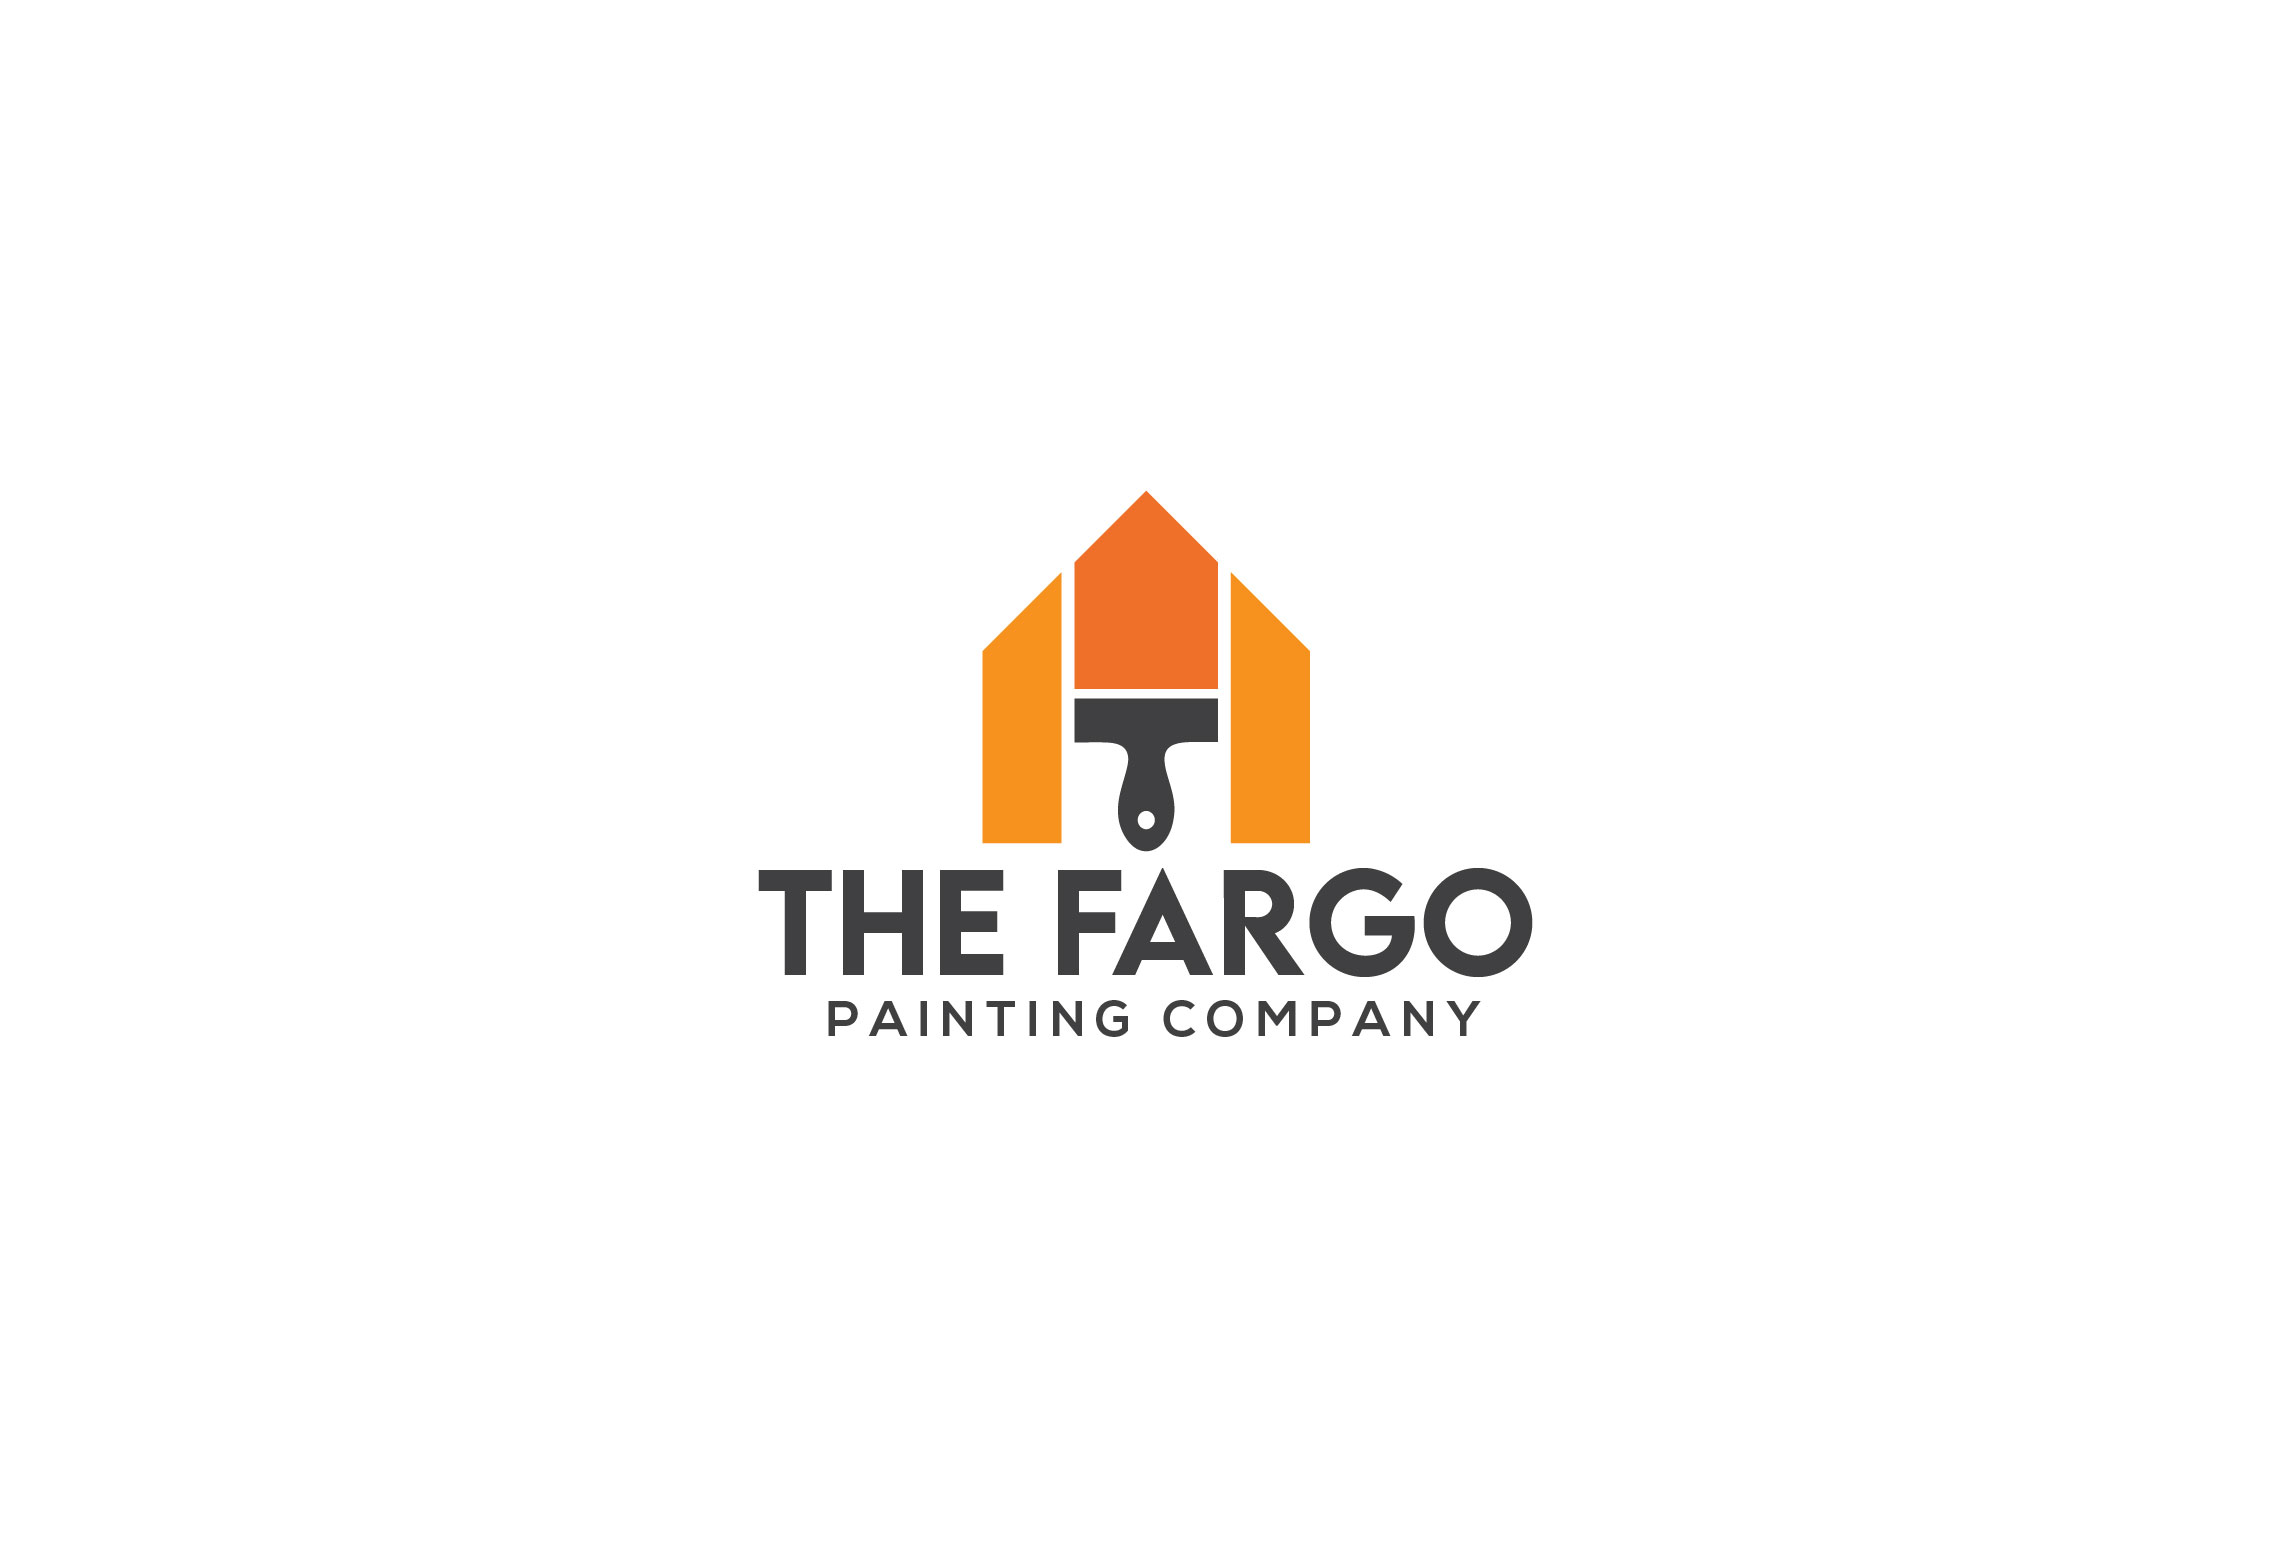 The Fargo Painting Company